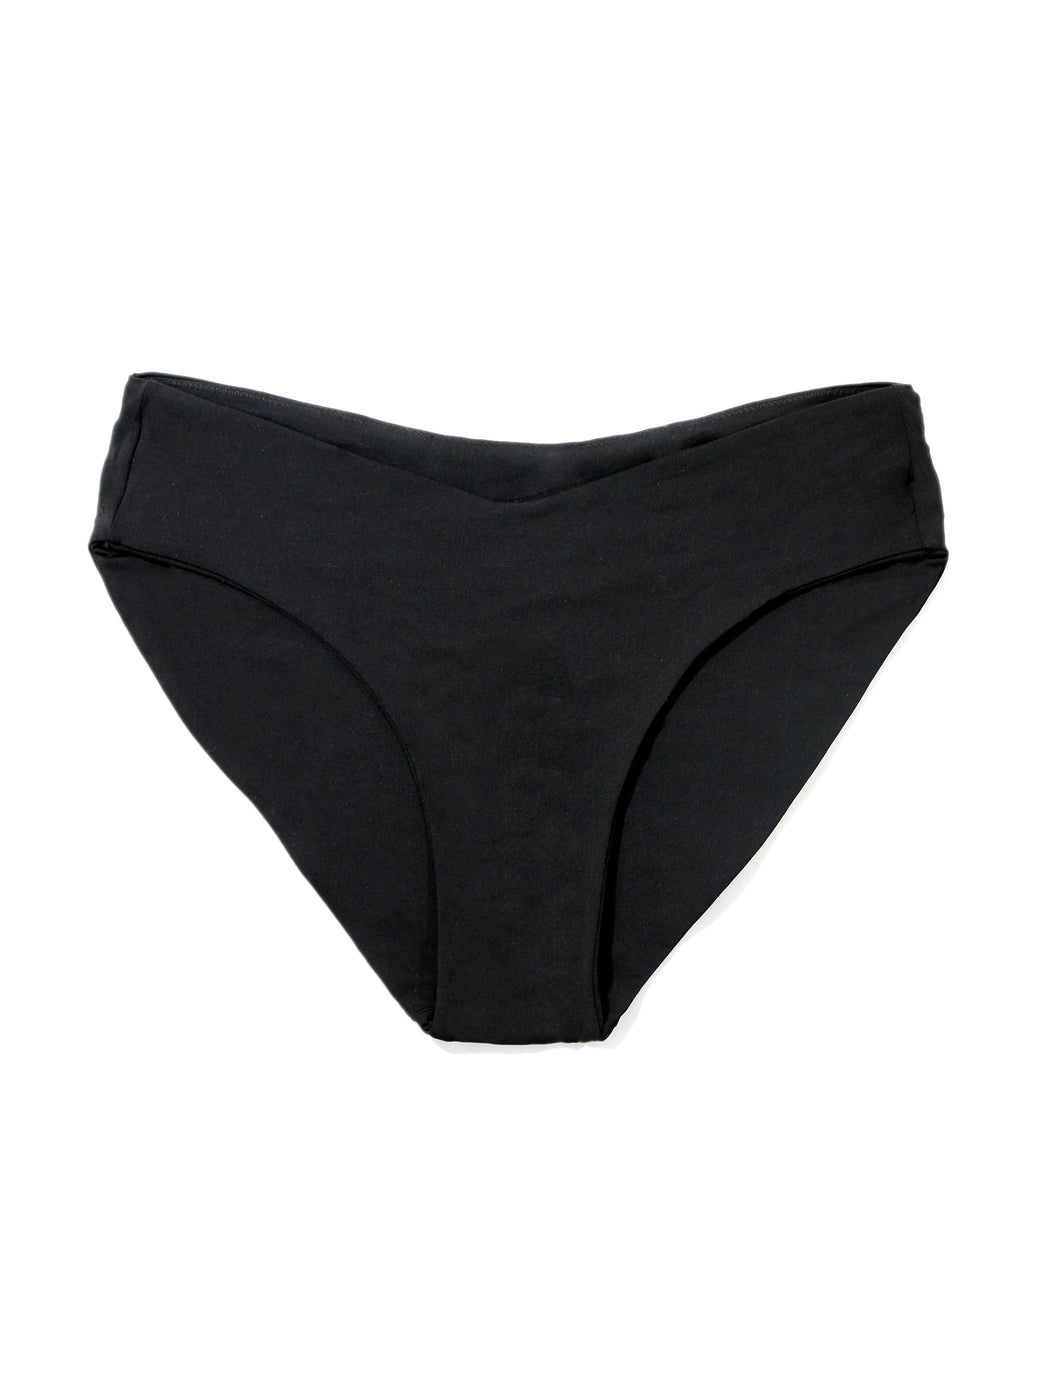 V-Kini Swimsuit Bottom Black